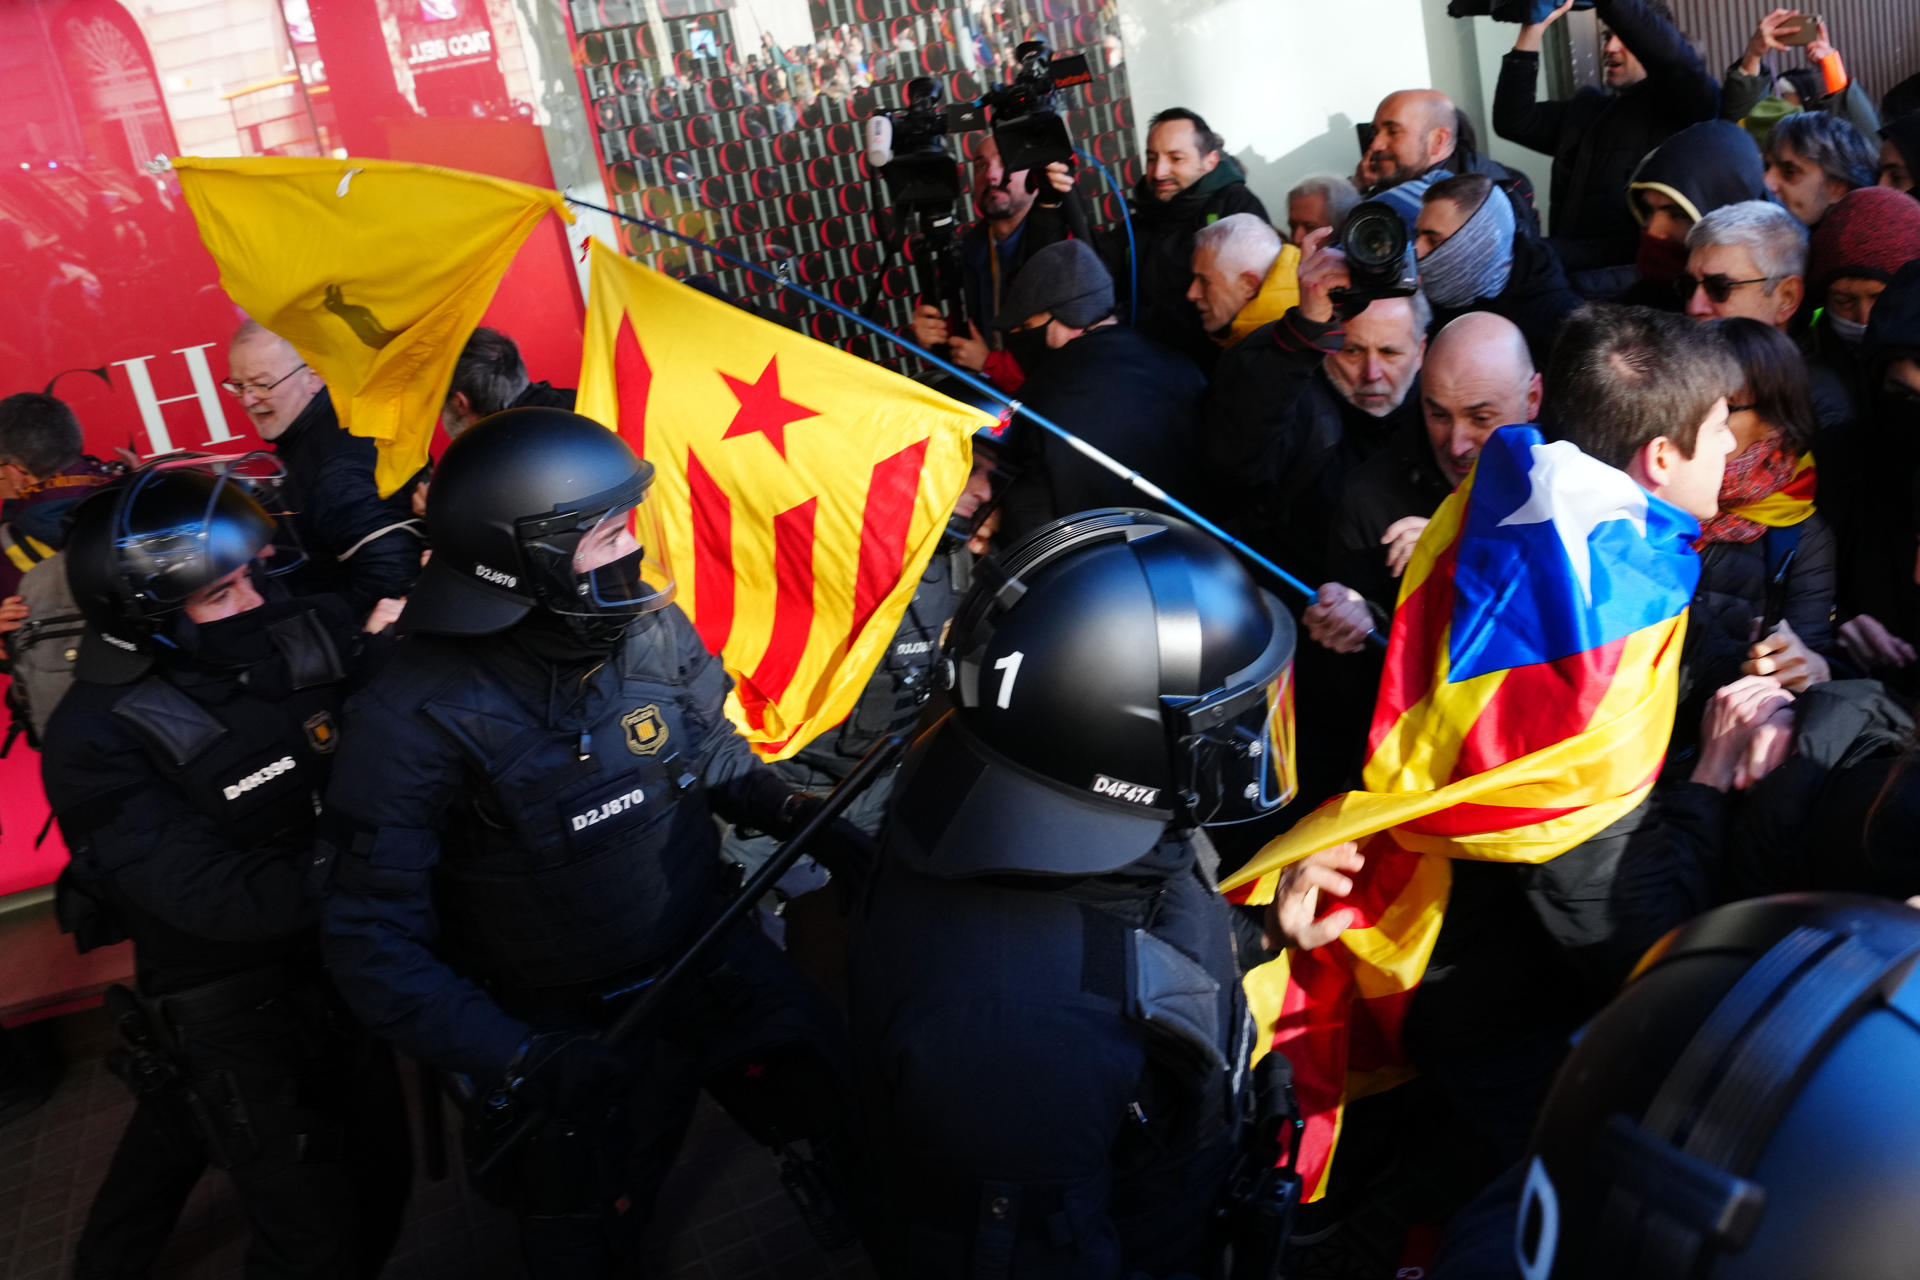 Incidentes el pasado mes de enero entre manifestantes y mossos d'Esquadra durante la manifestación promovida por los CDR ante el Consulado General de Francia contra la cumbre hispanofrancesa, este jueves en Barcelona. EFE/ Enric Fontcuberta